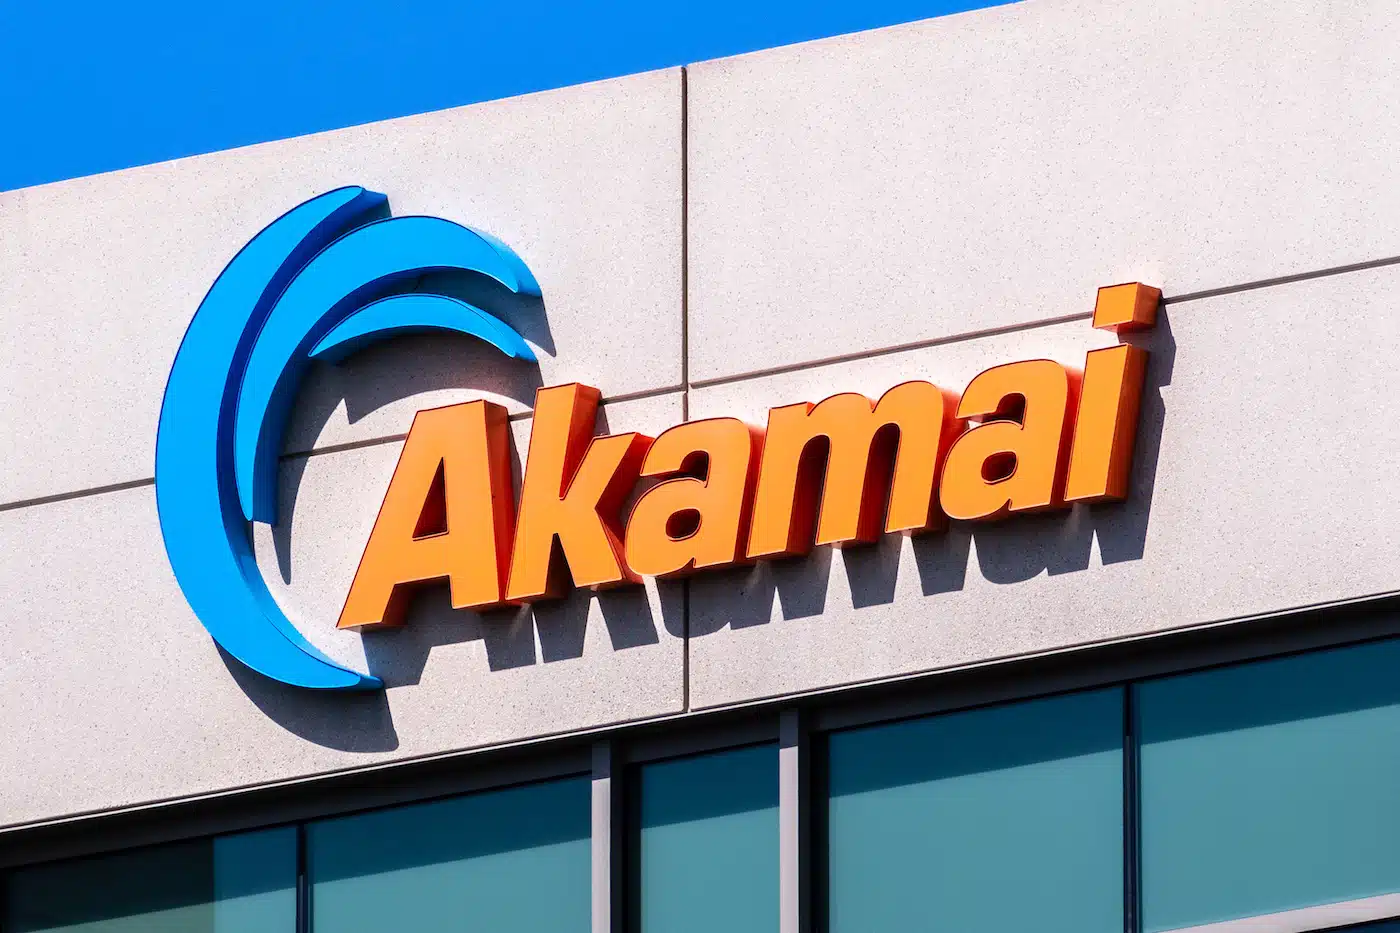 Parte superior del edificio de Akamai con el logotipo azul y naranja de Akamai